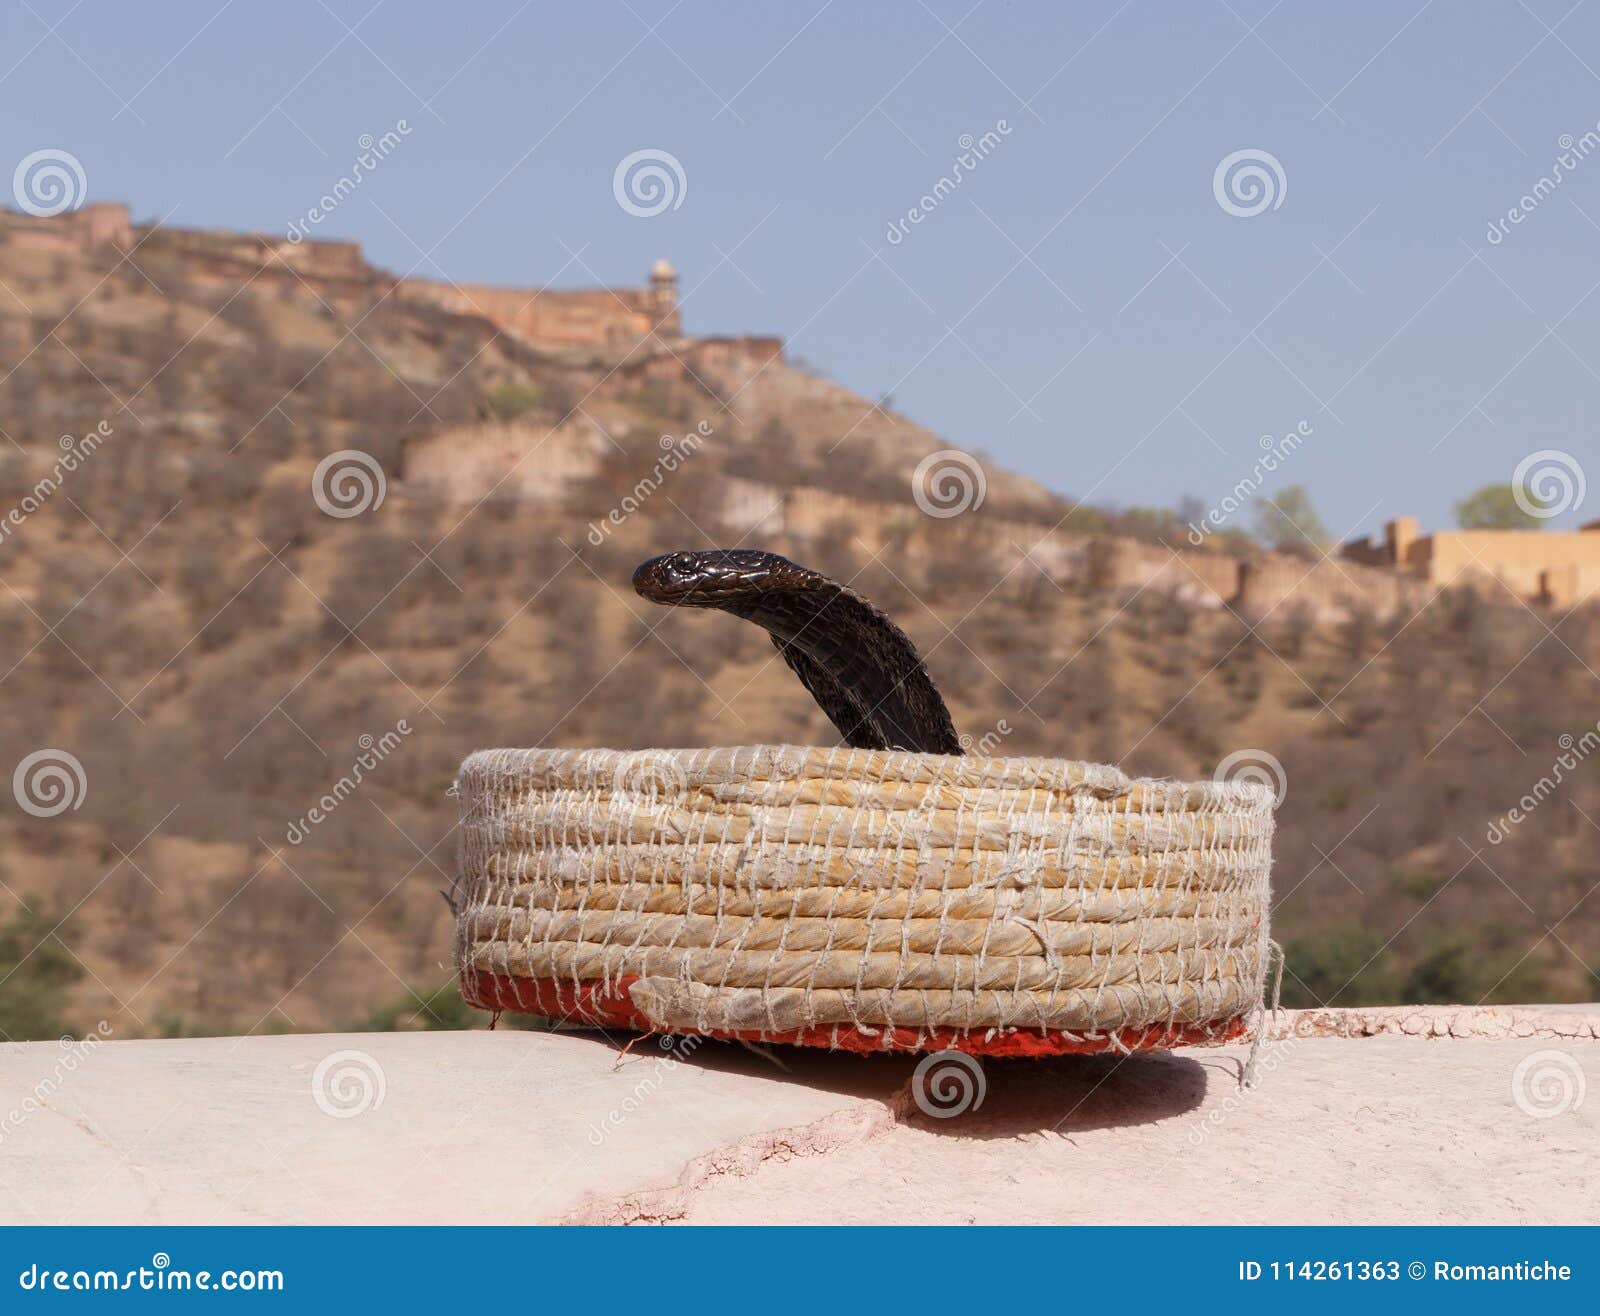 cobra in fakir`s basket against amer fort